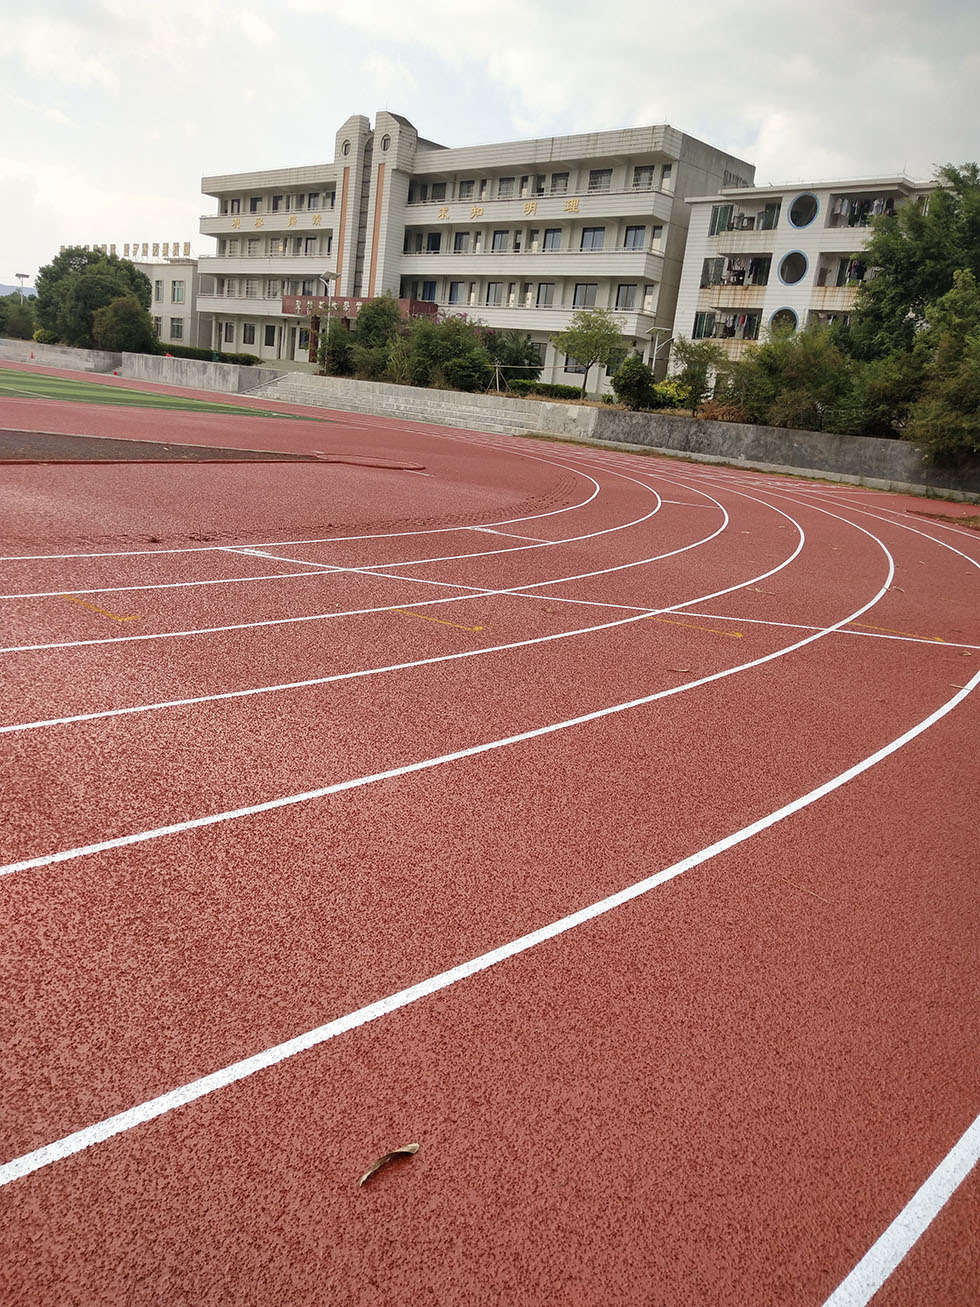 「山东学校塑胶跑道」200米跑道的尺寸是多少